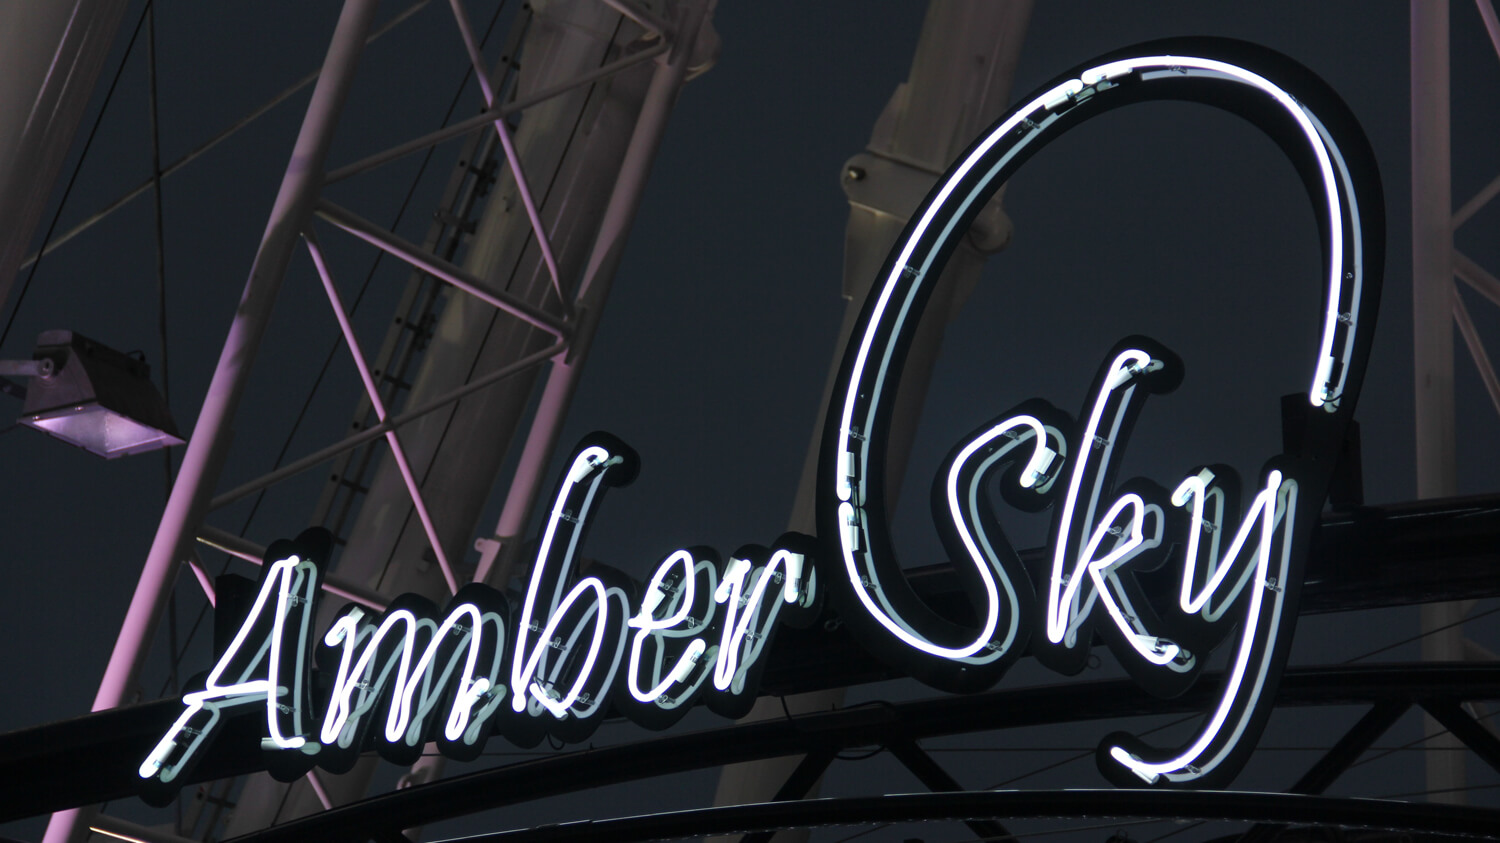 Bernsteinfarbener Himmel - Amber Sky - weißes Neonschild mit dem Firmennamen auf dem Gestell